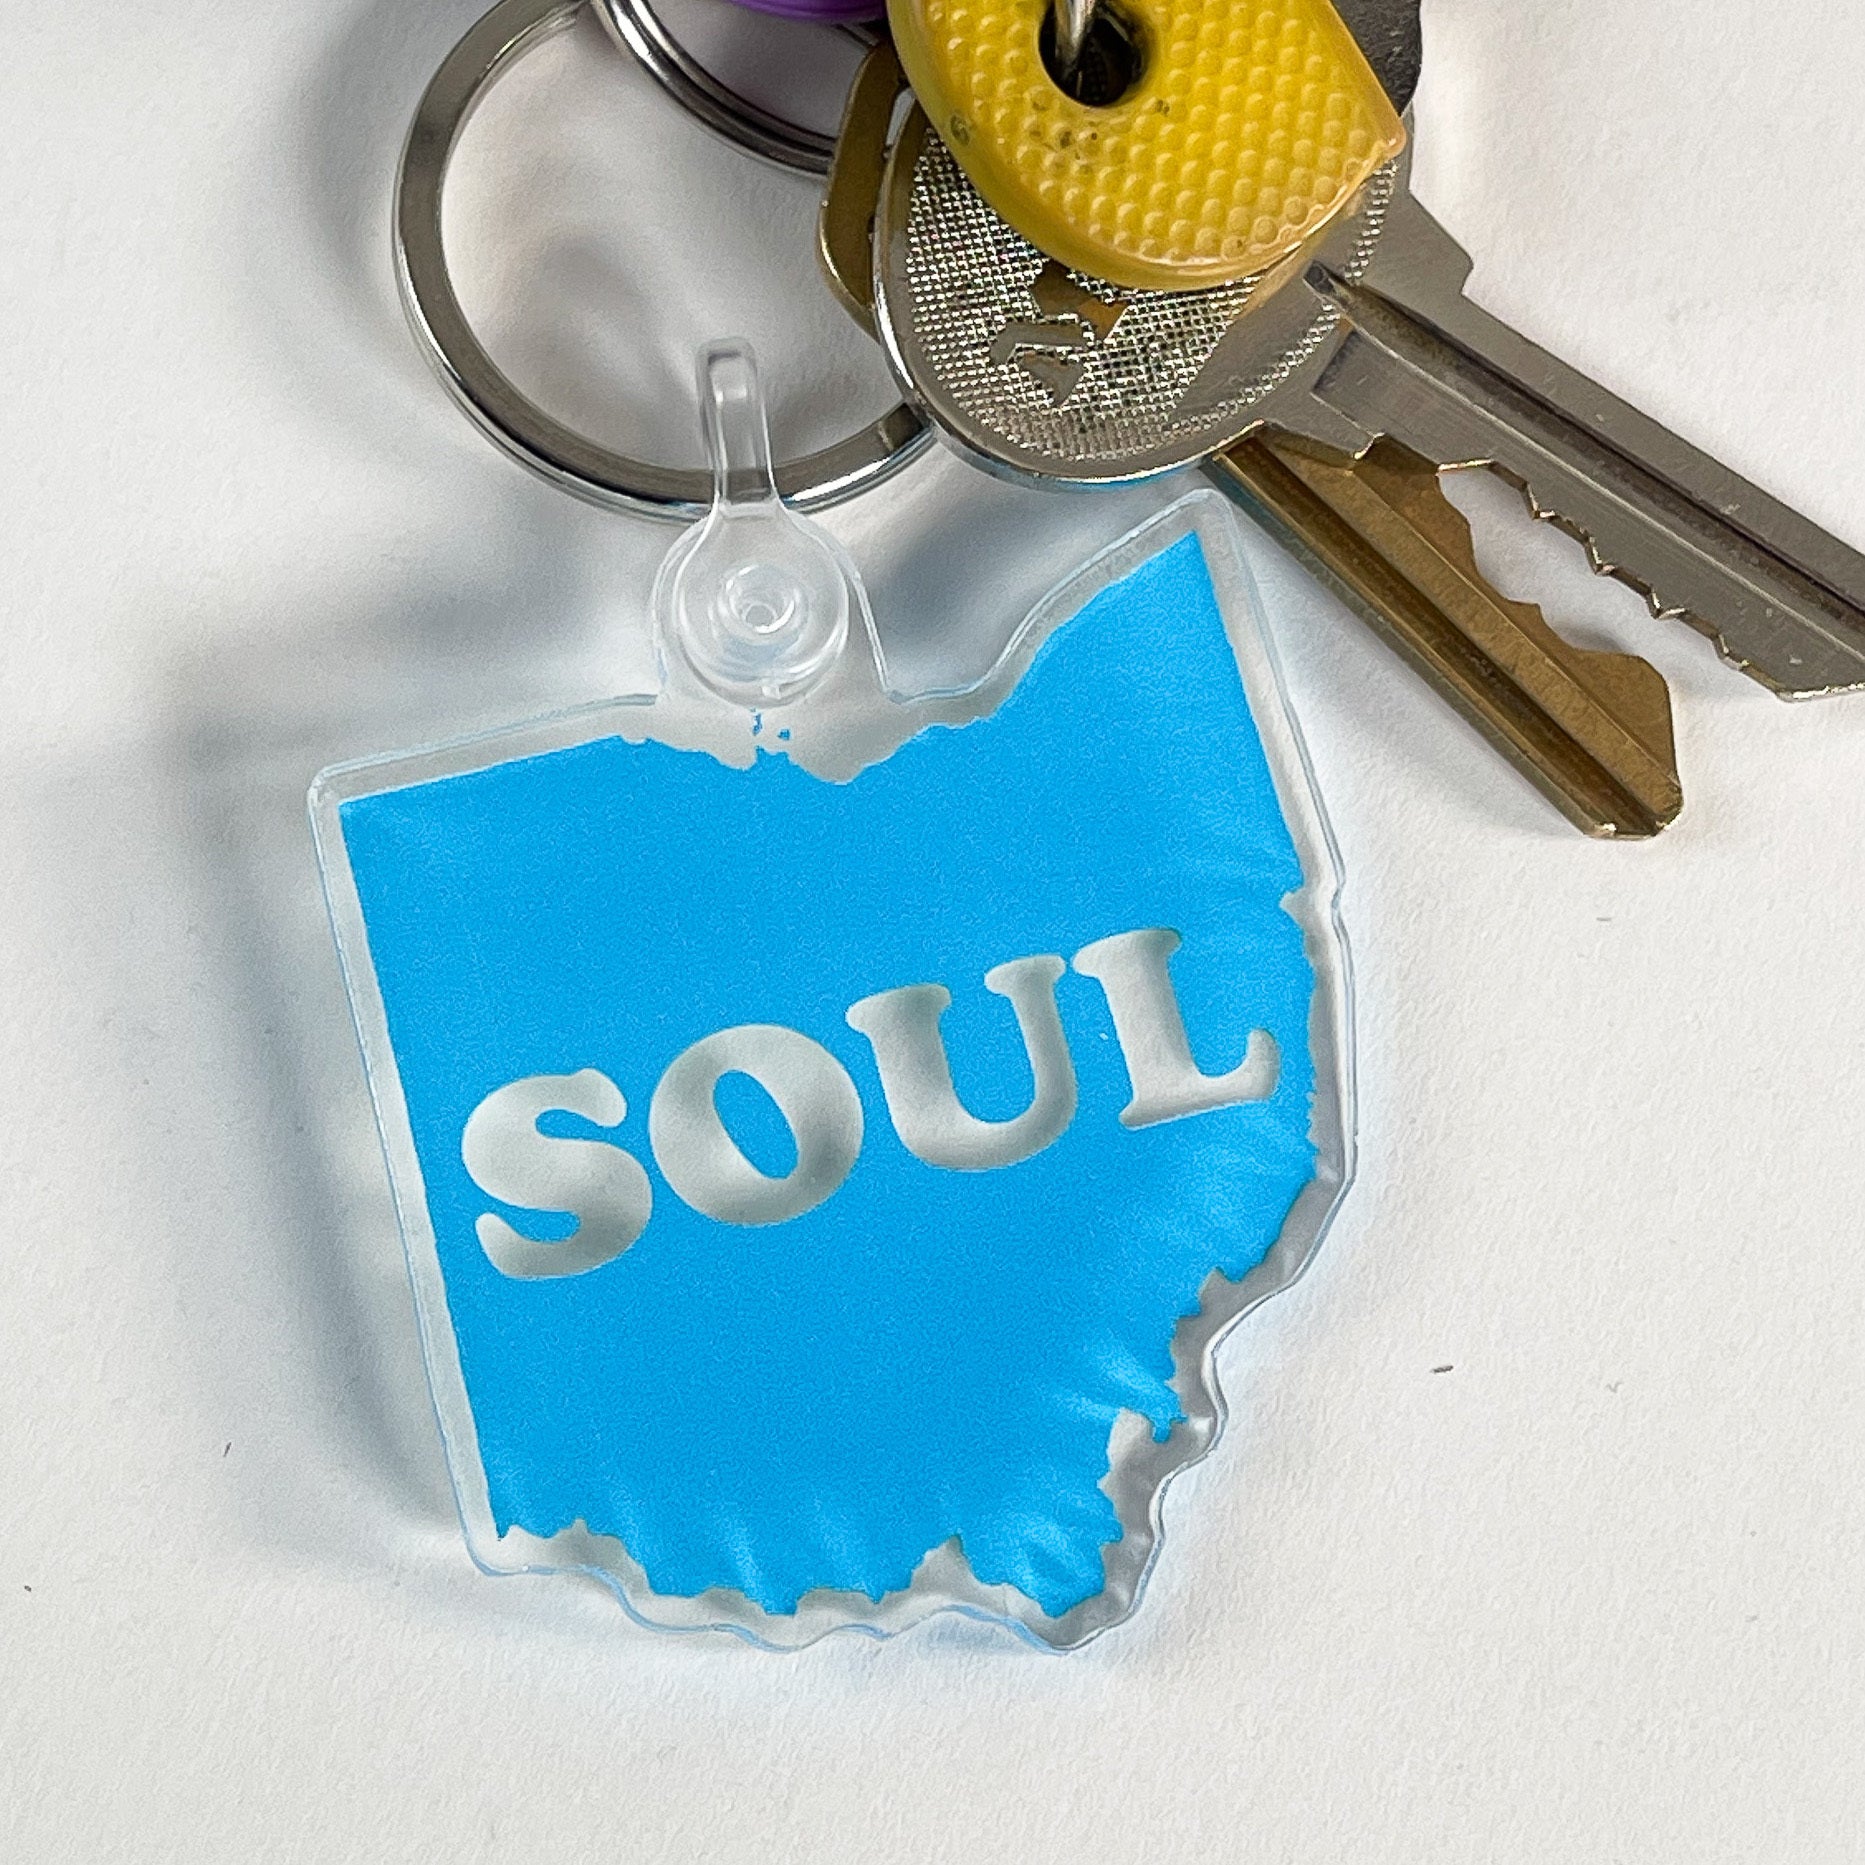 Ohio Soul Keychain